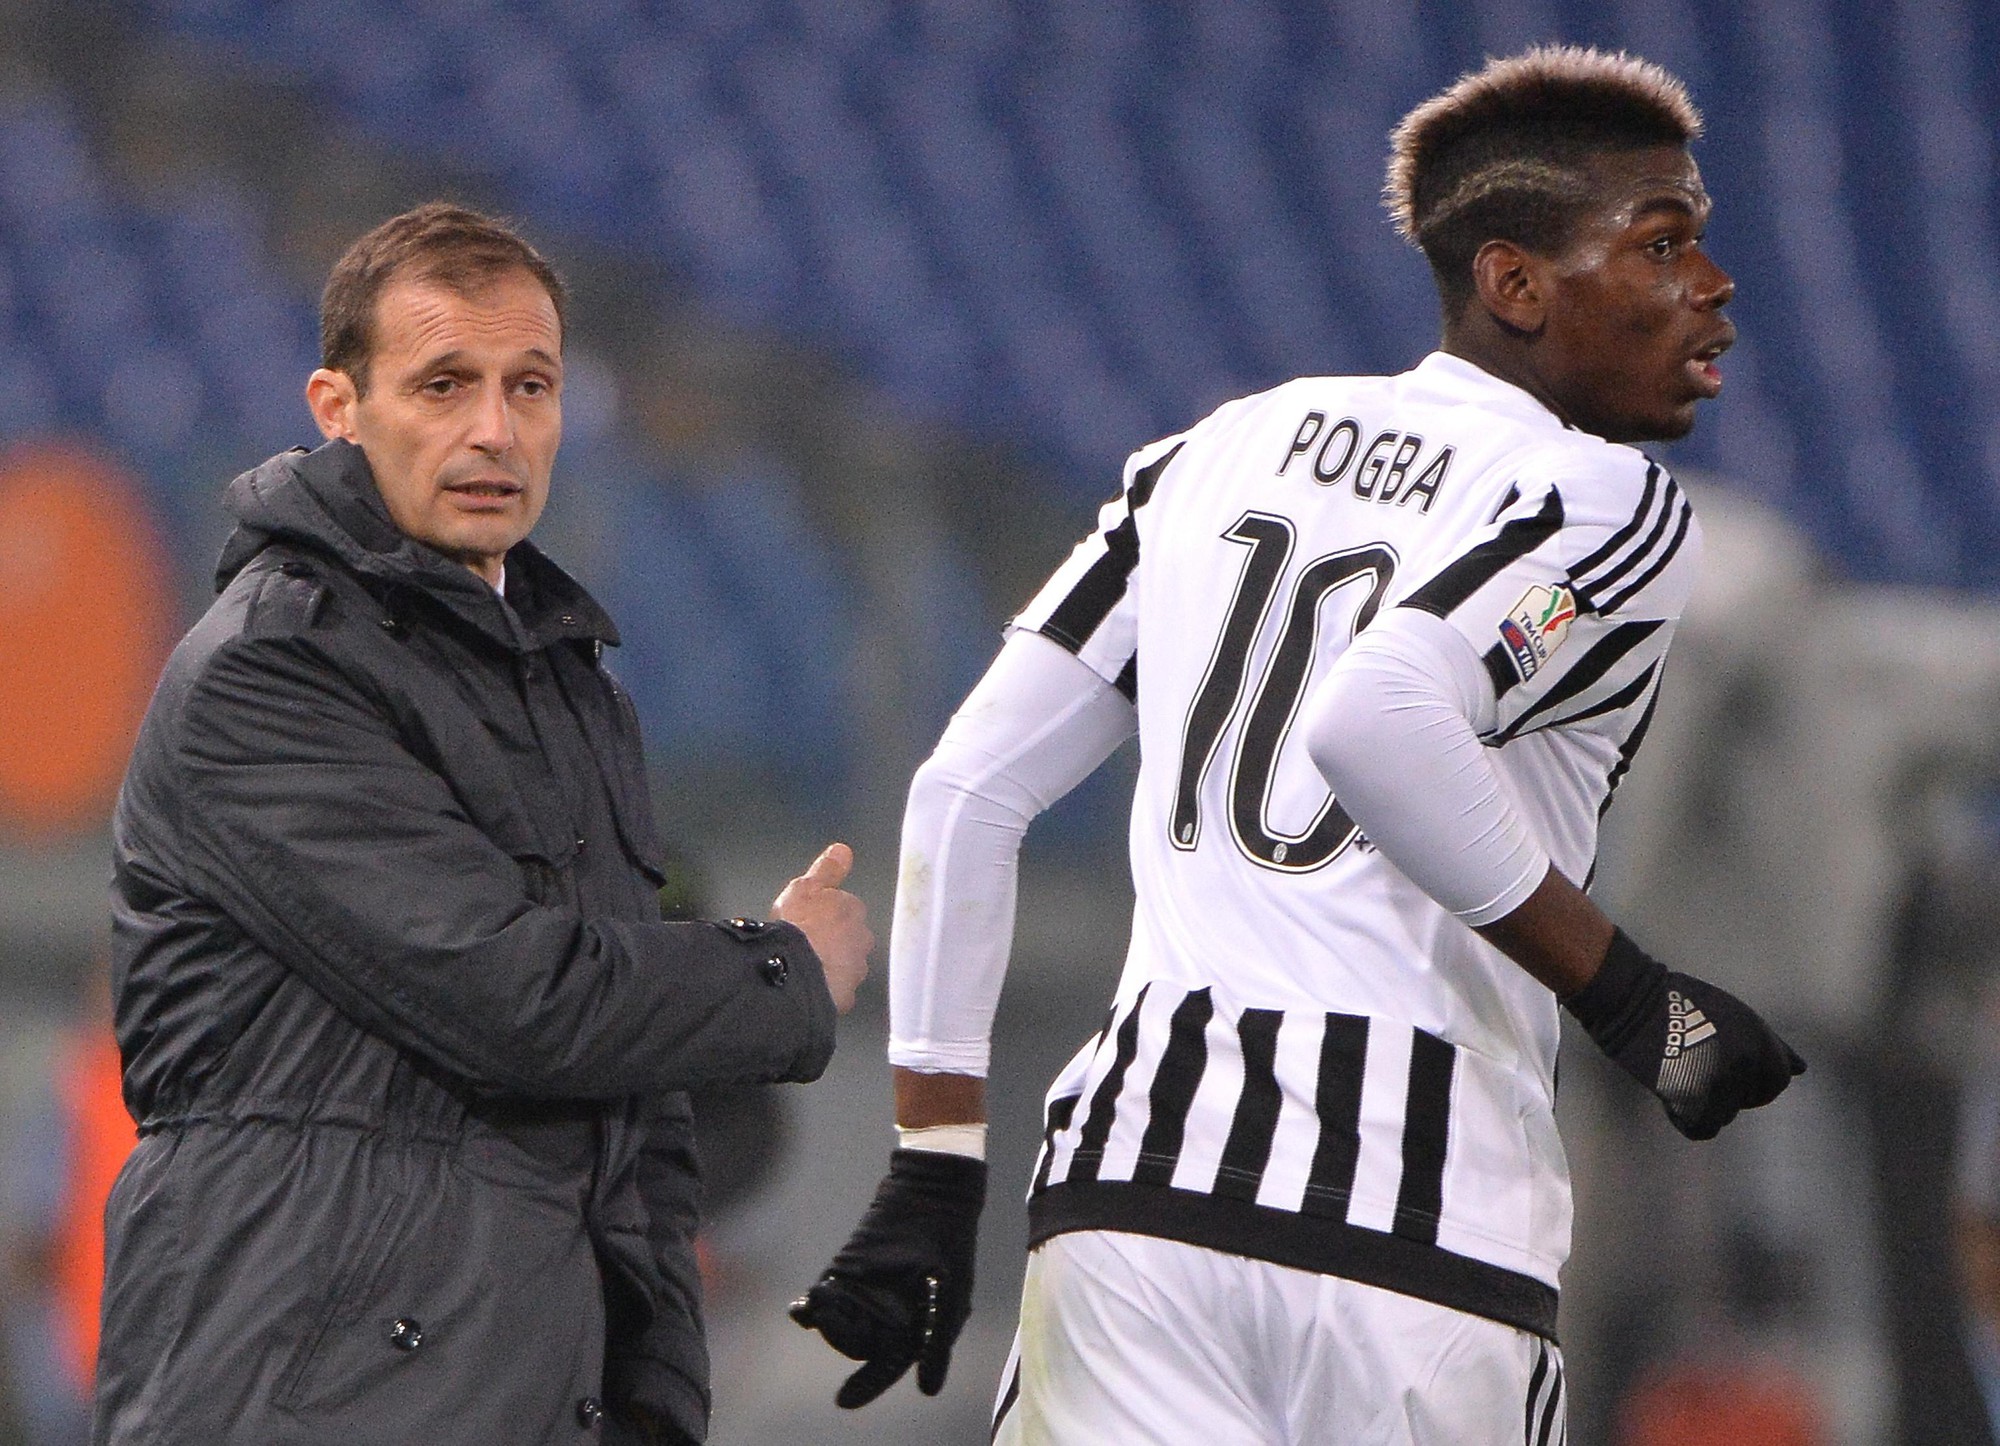 Ở Juventus, HLV Allegri cho phép Pogba tự do di chuyển, điều không phù hợp với Pep